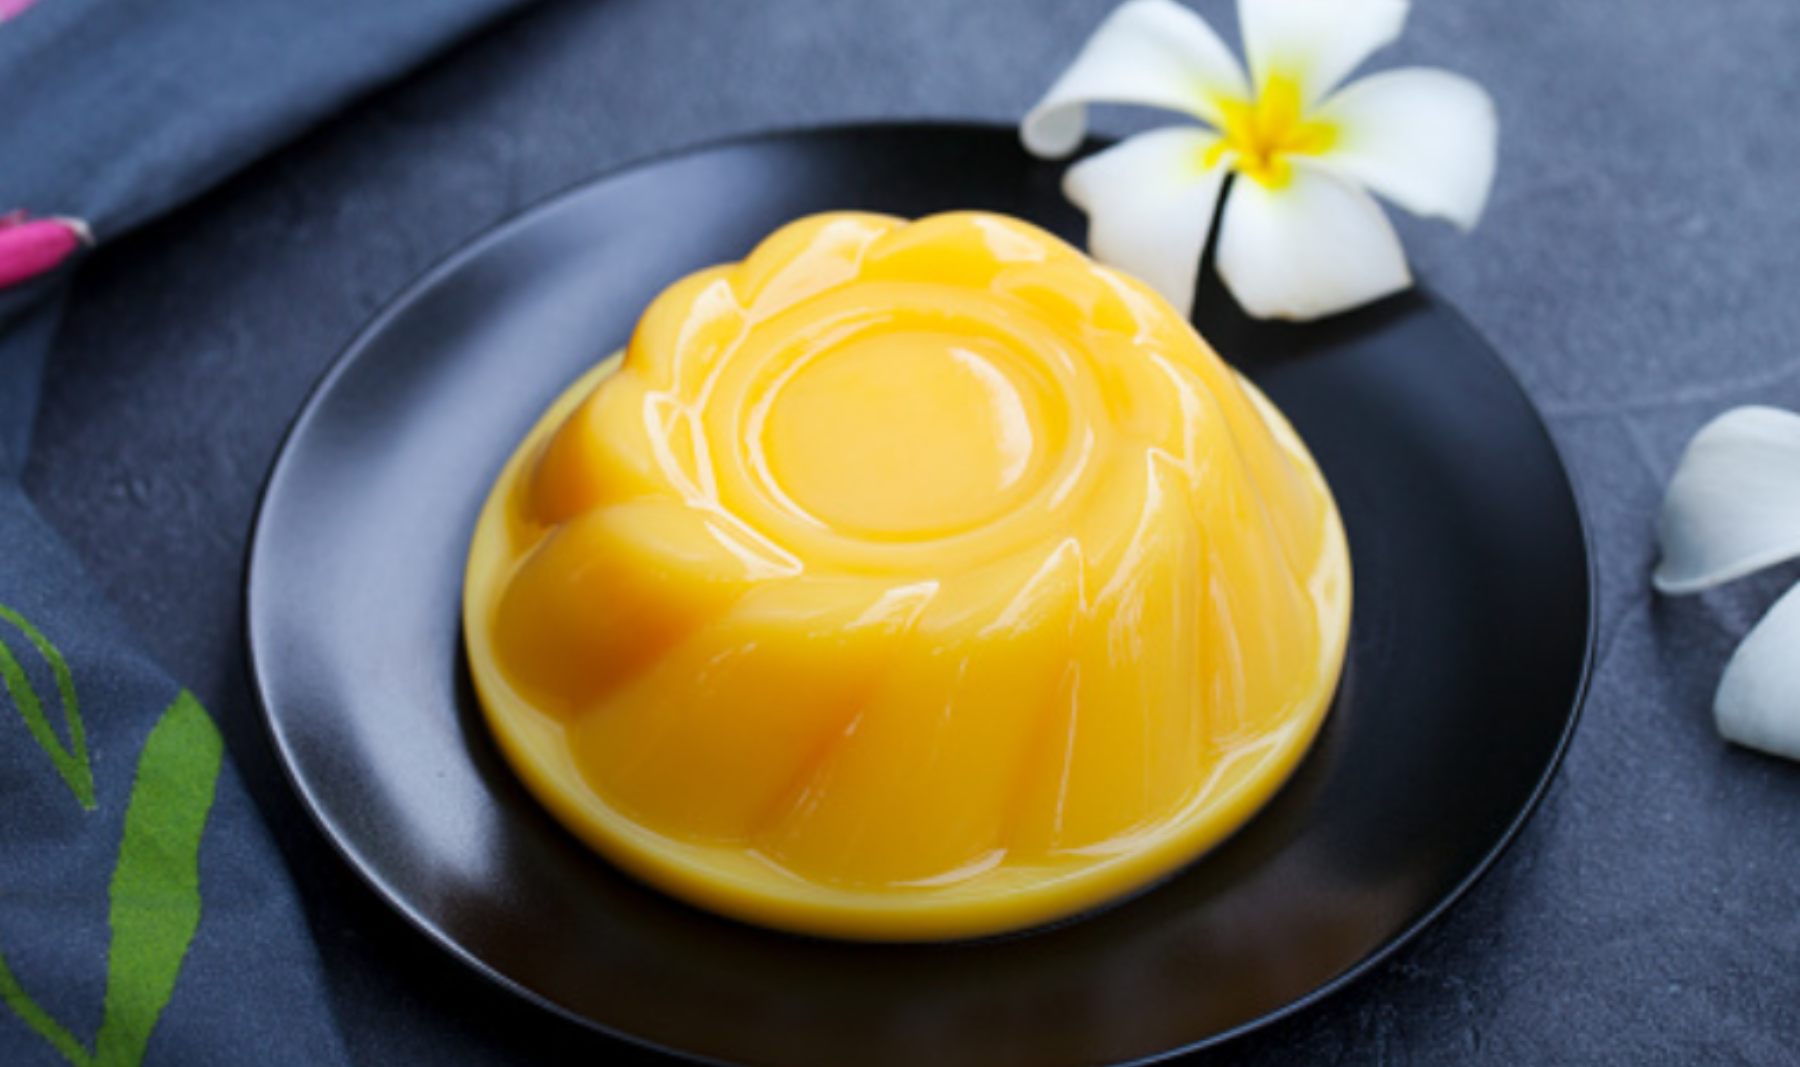 Gelatina natural de naranja, receta del postre con más vitamina C 4